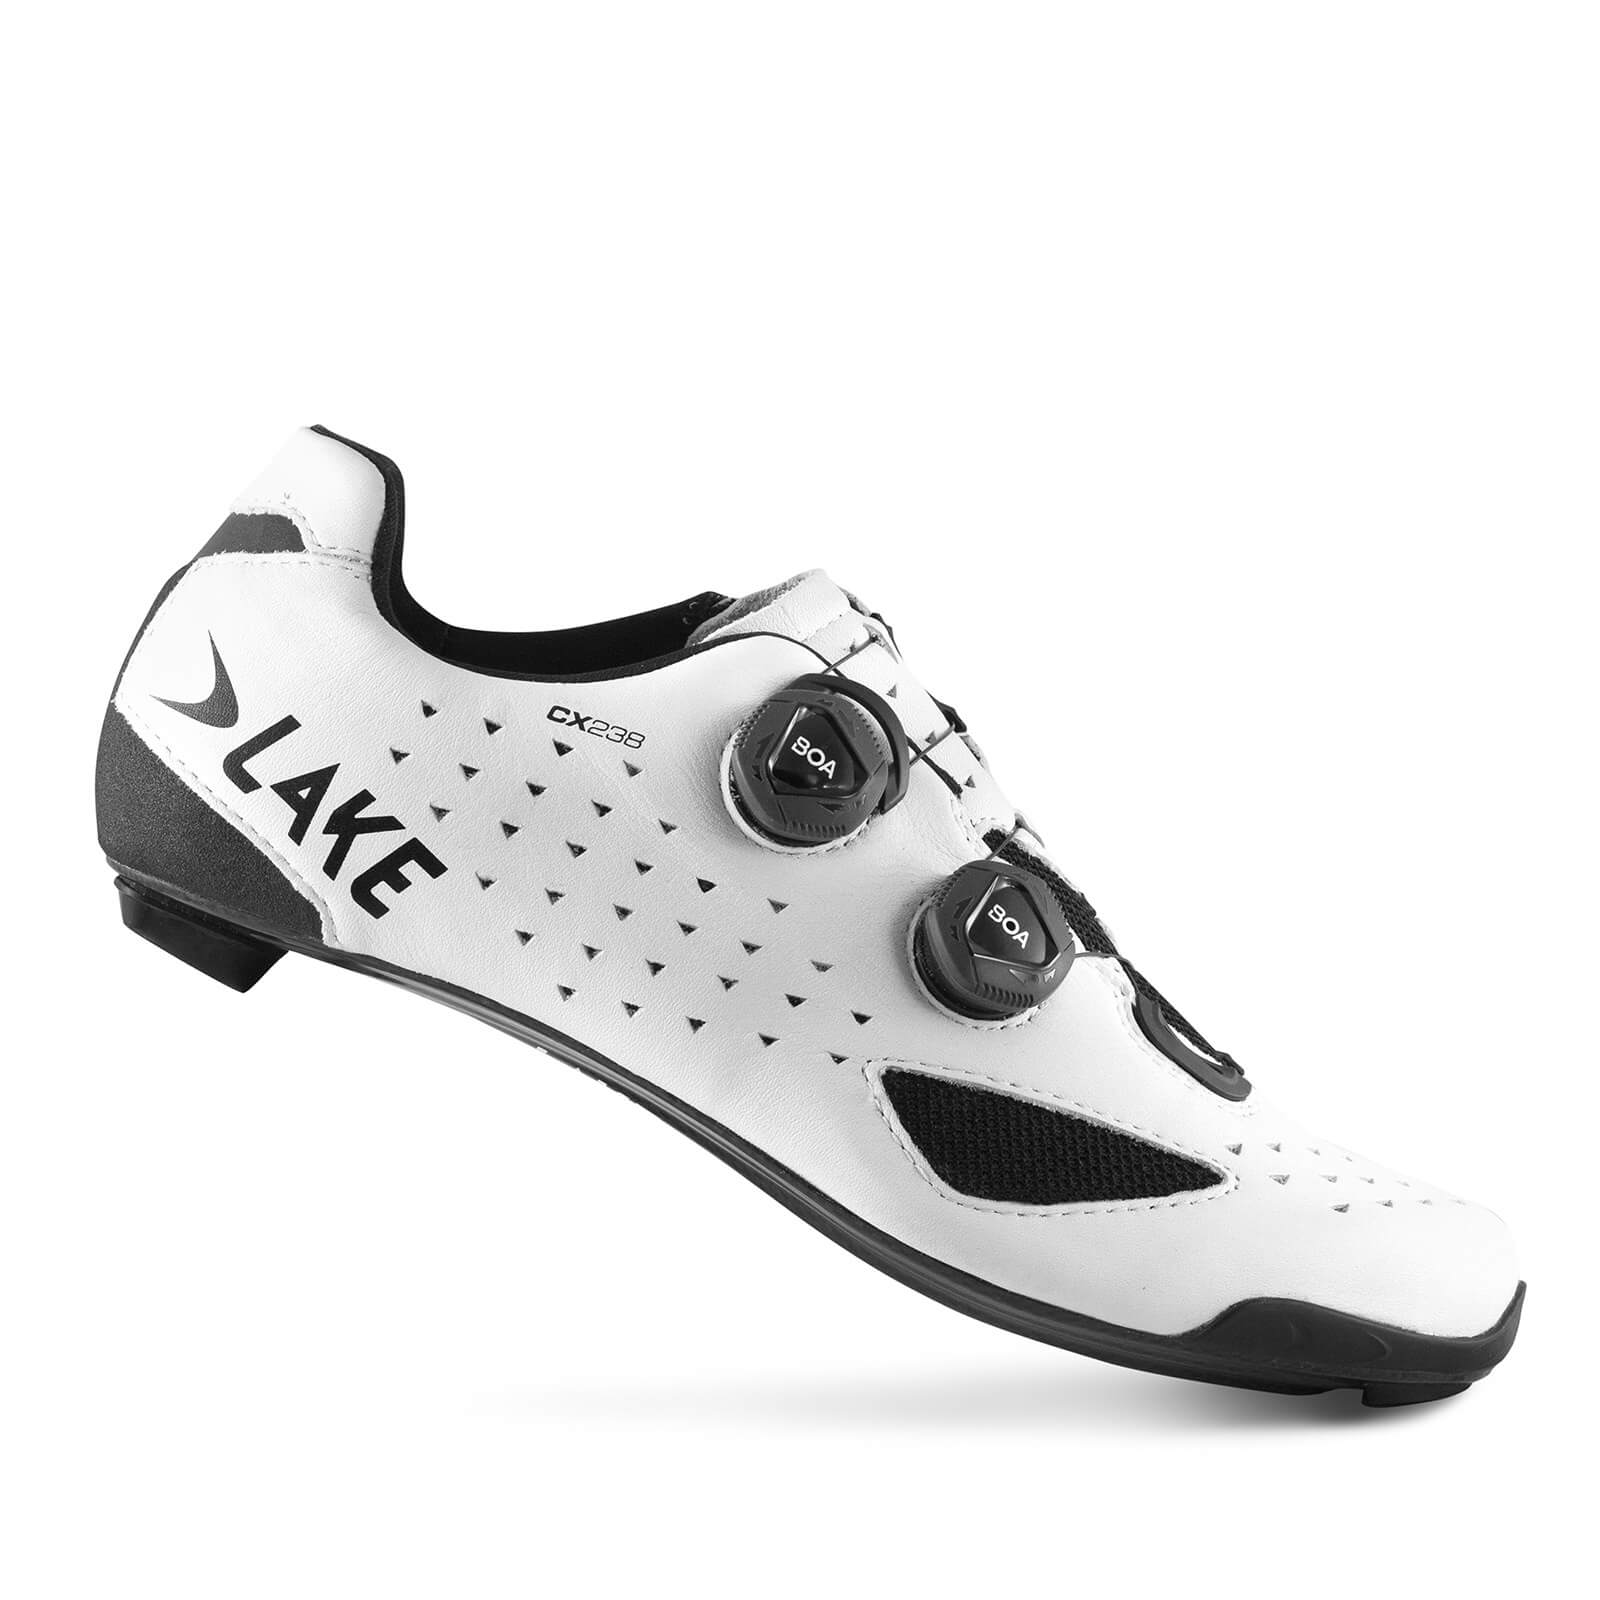 Lake CX238 Road Shoes - EU44 - White